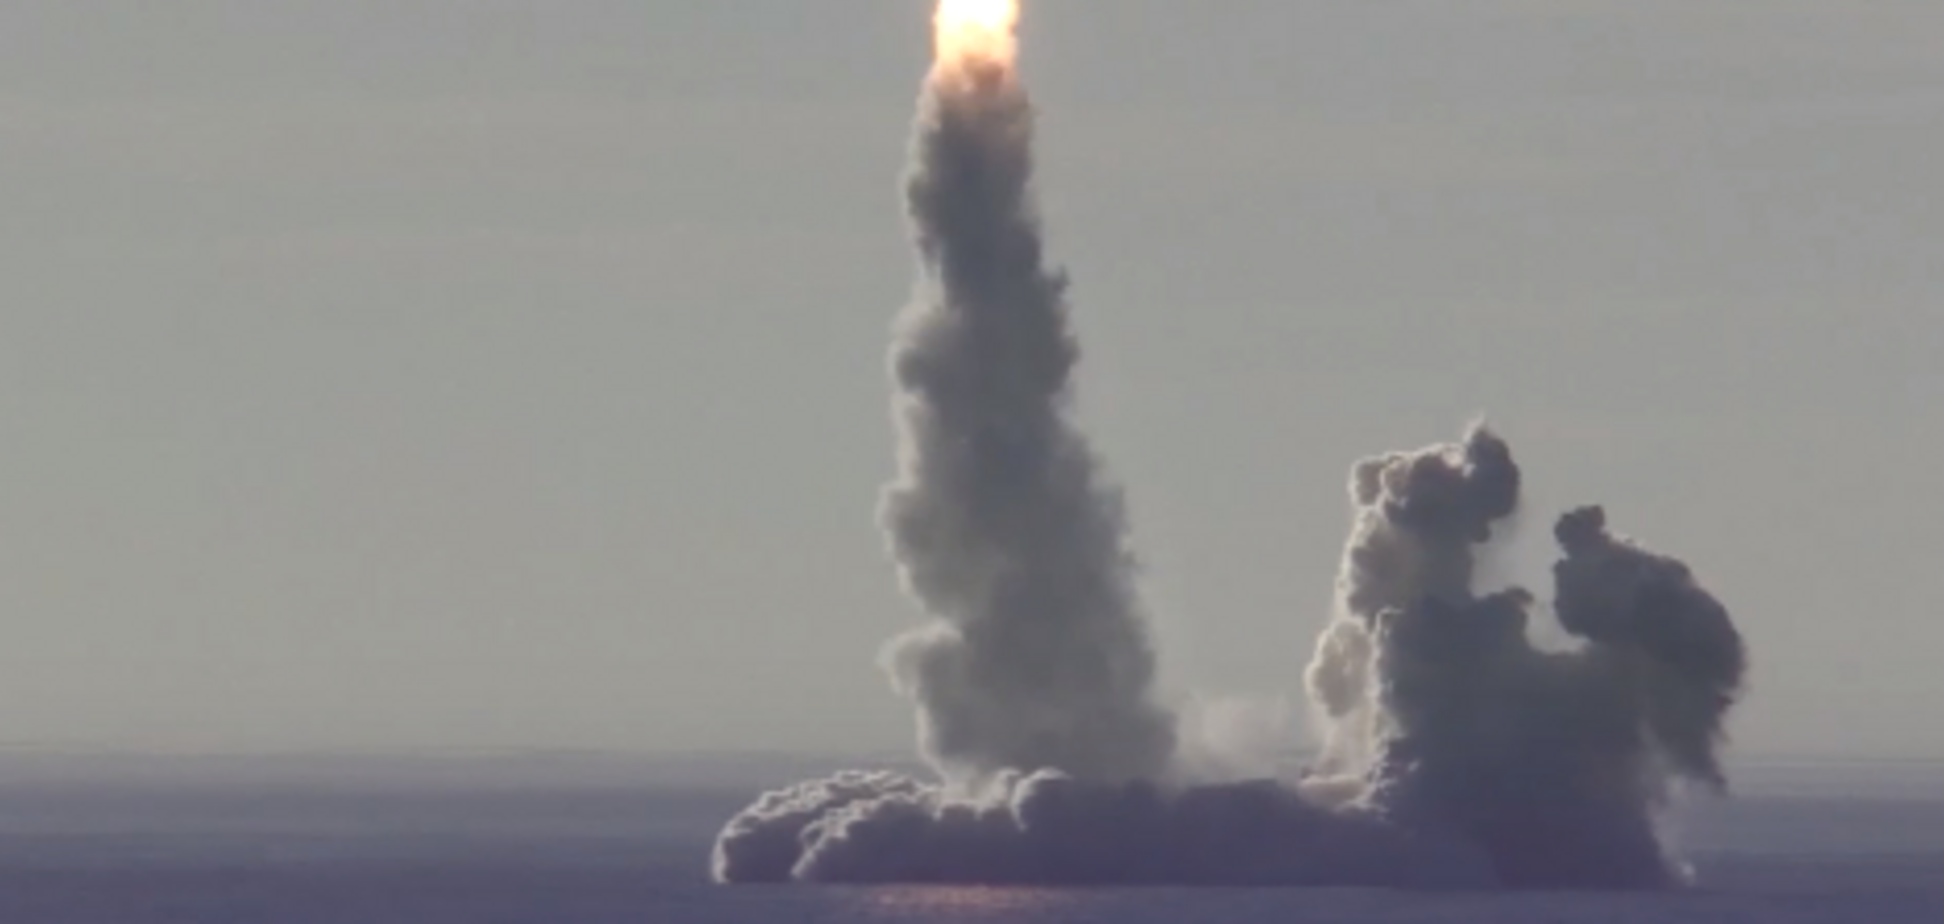 До цього завжди падали: в Росії похвалилися відео запуску погано літаючих ракет 'Булава'